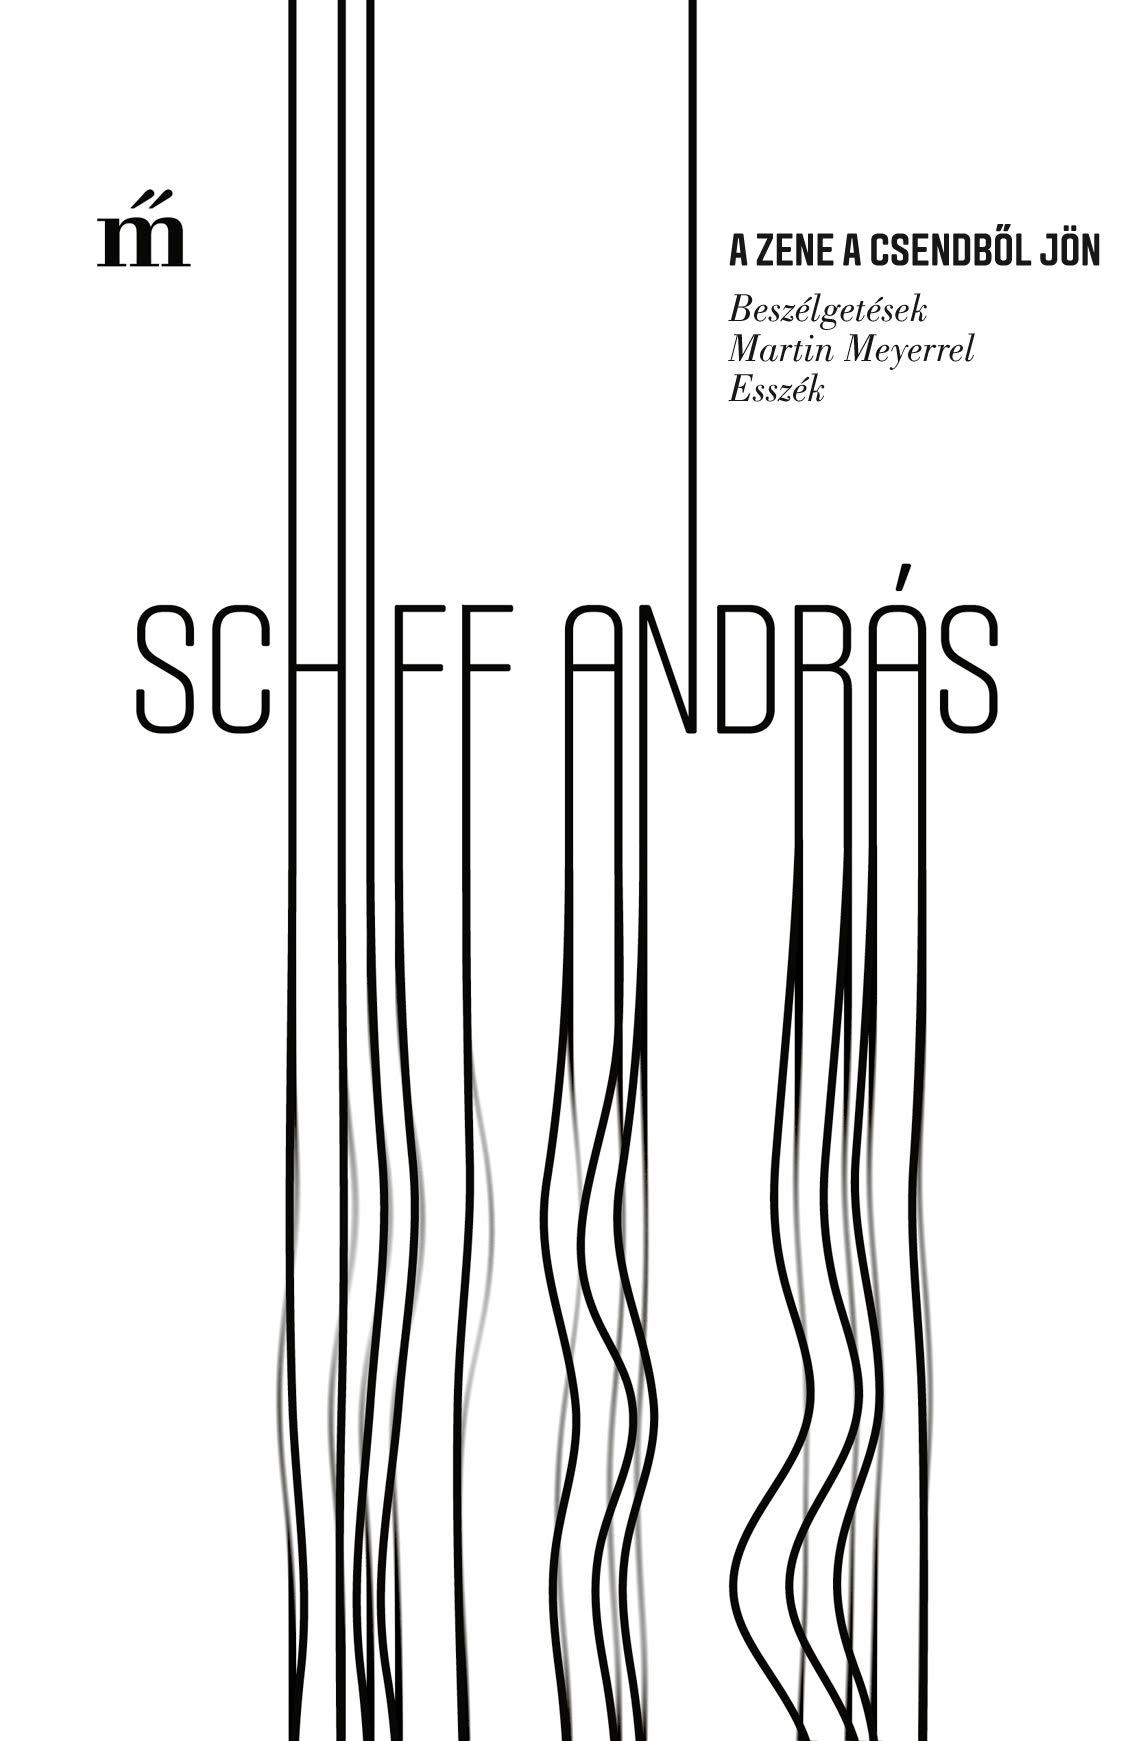 Schiff András - A zene a csendből jön - Beszélgetések Martin Meyerrel, Esszék.